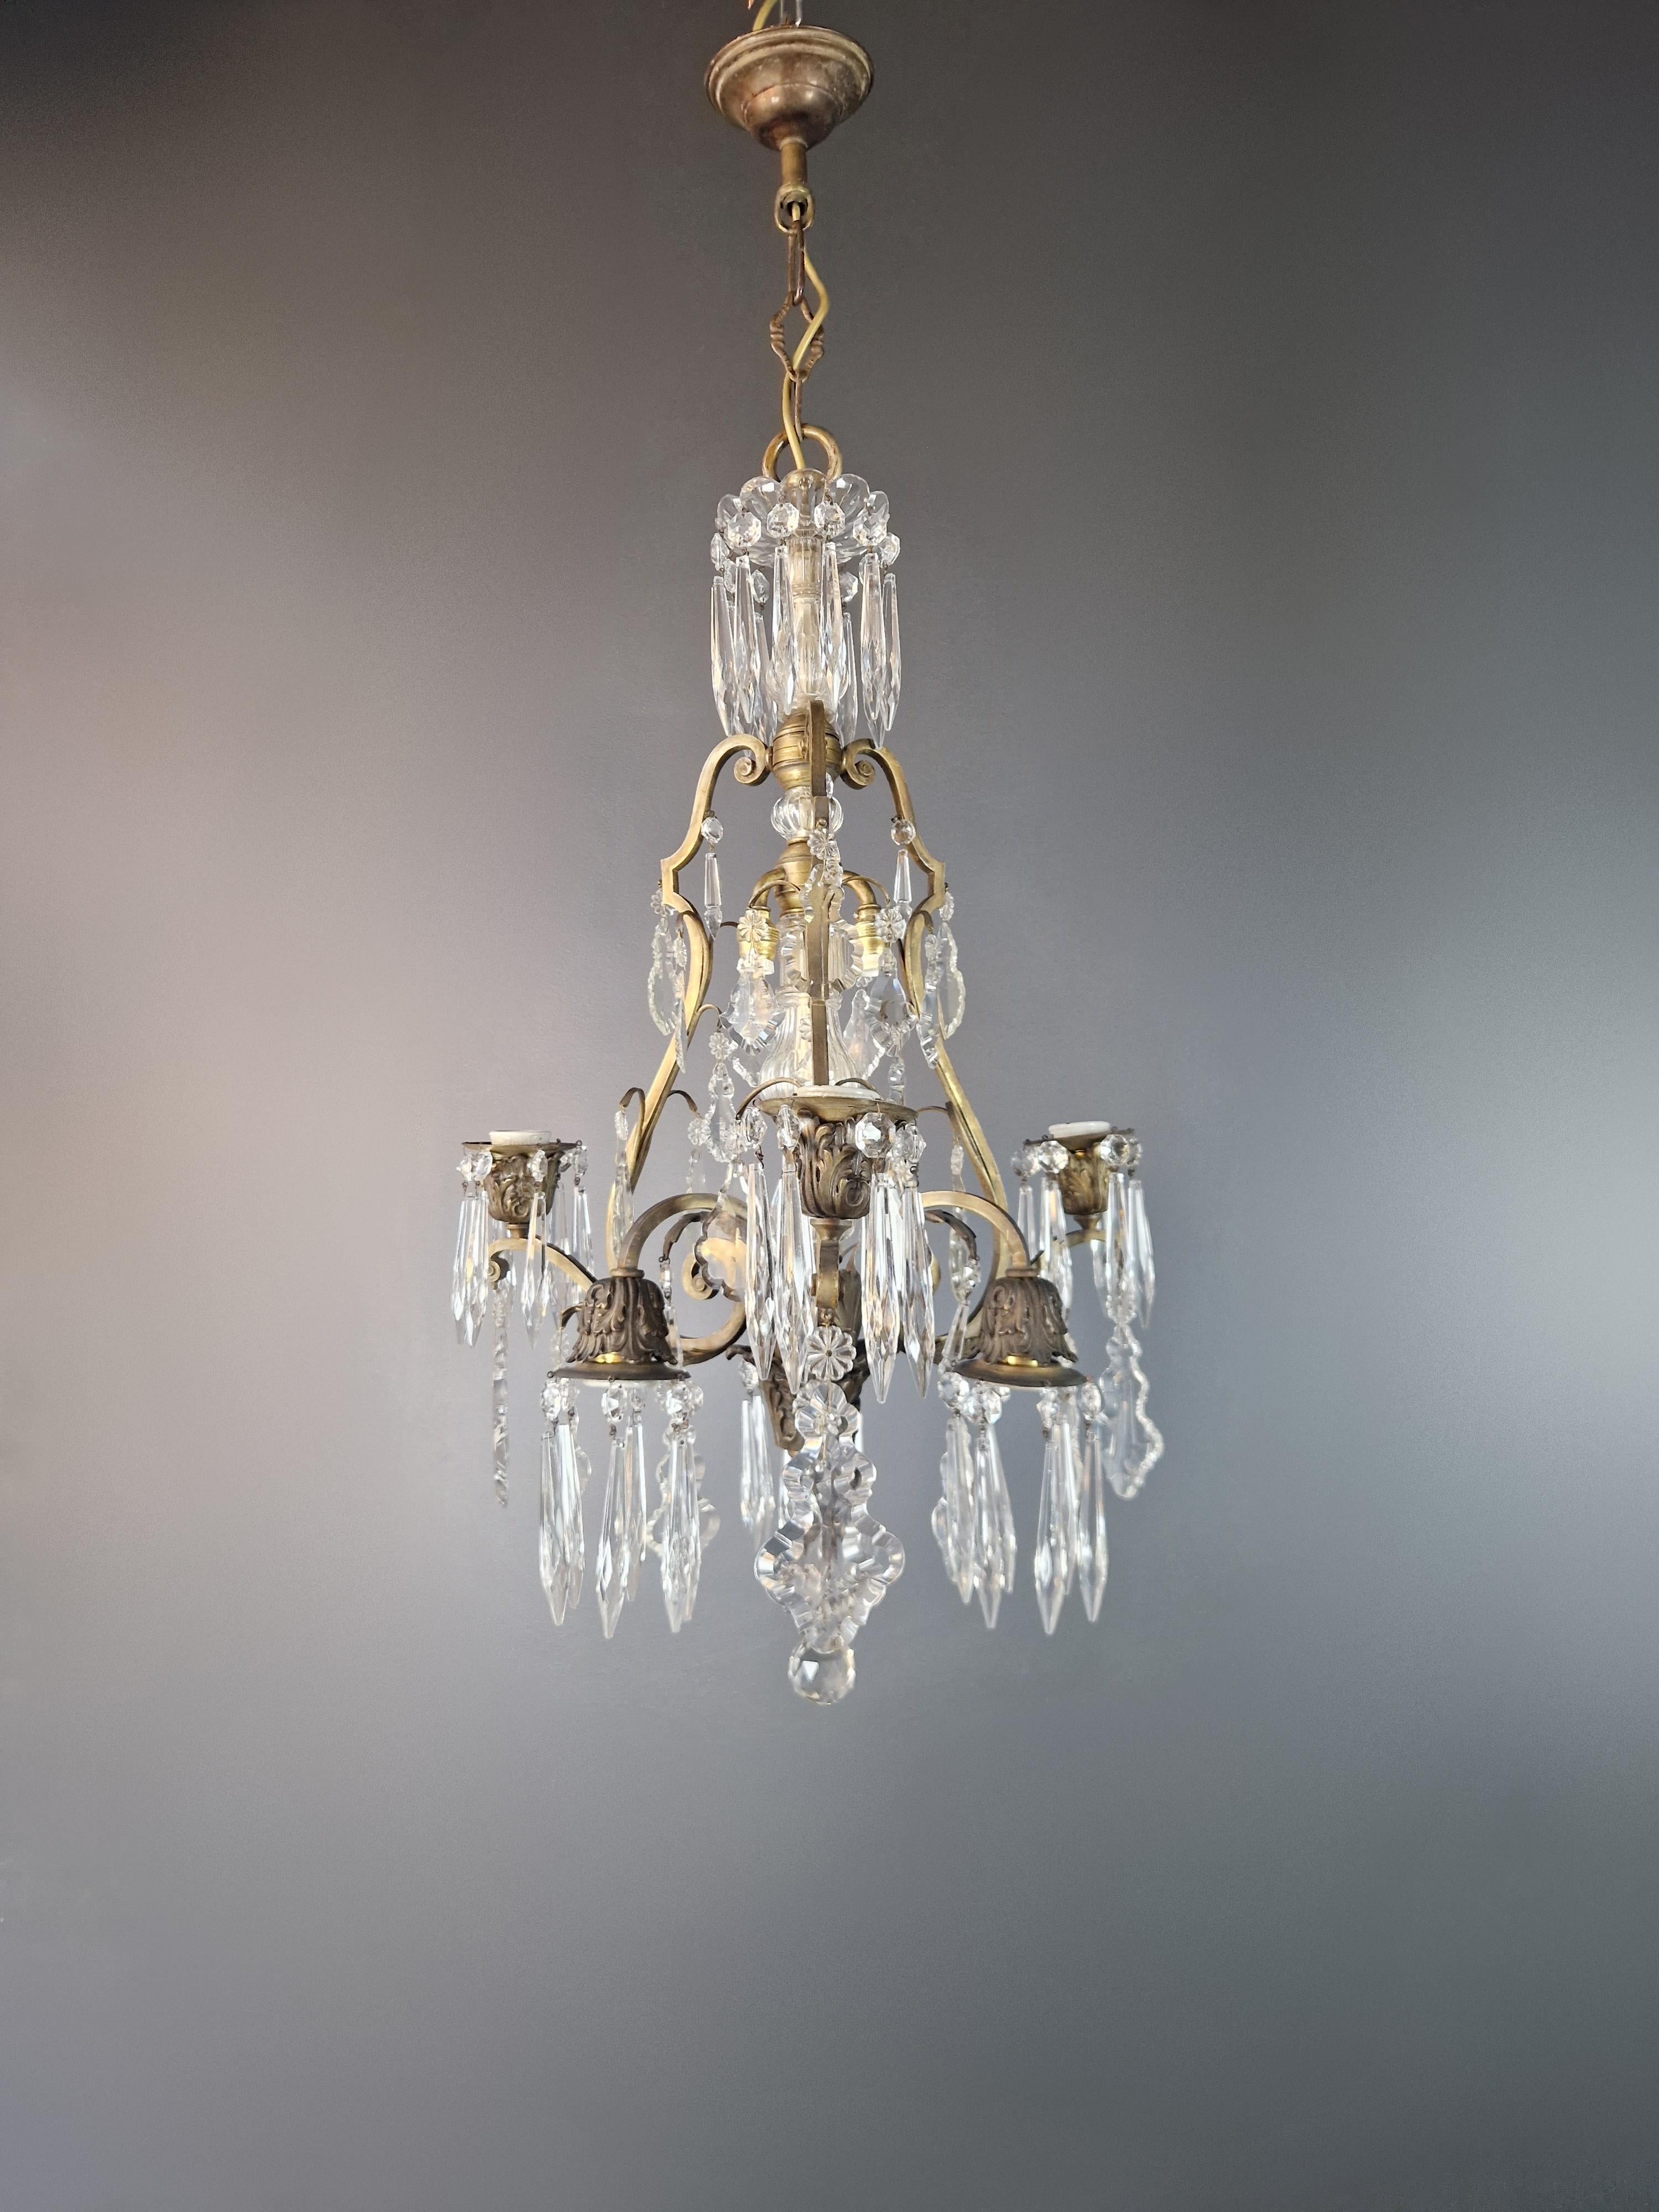 Brass Crystal Chandelier Antique Ceiling Lamp Lustre Art Nouveau and Art Deco For Sale 4